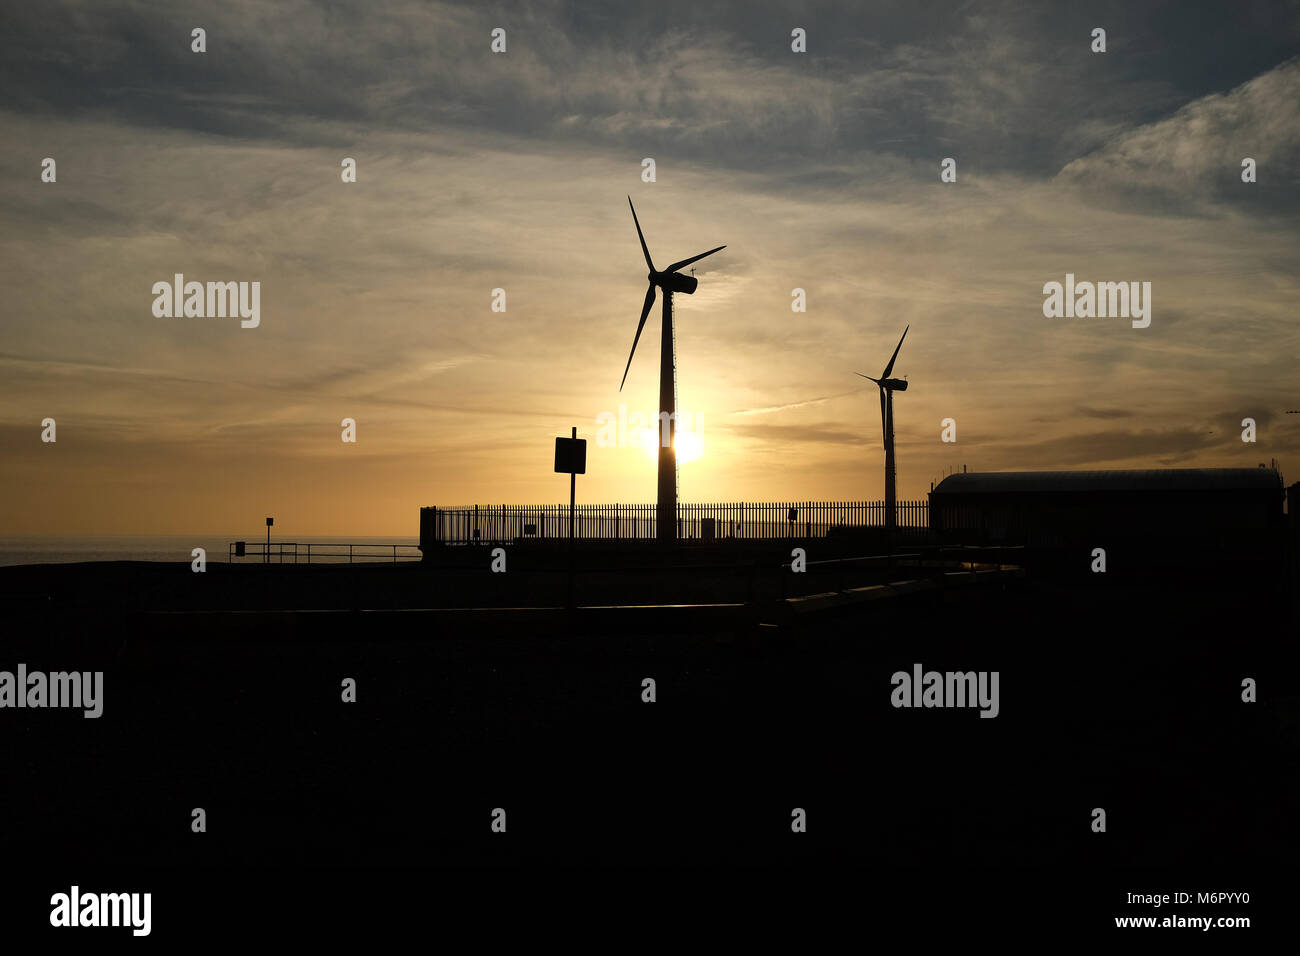 Plage Southwick, Port Shoreham, West Sussex, Angleterre. Voir la silhouette de deux éoliennes. Banque D'Images